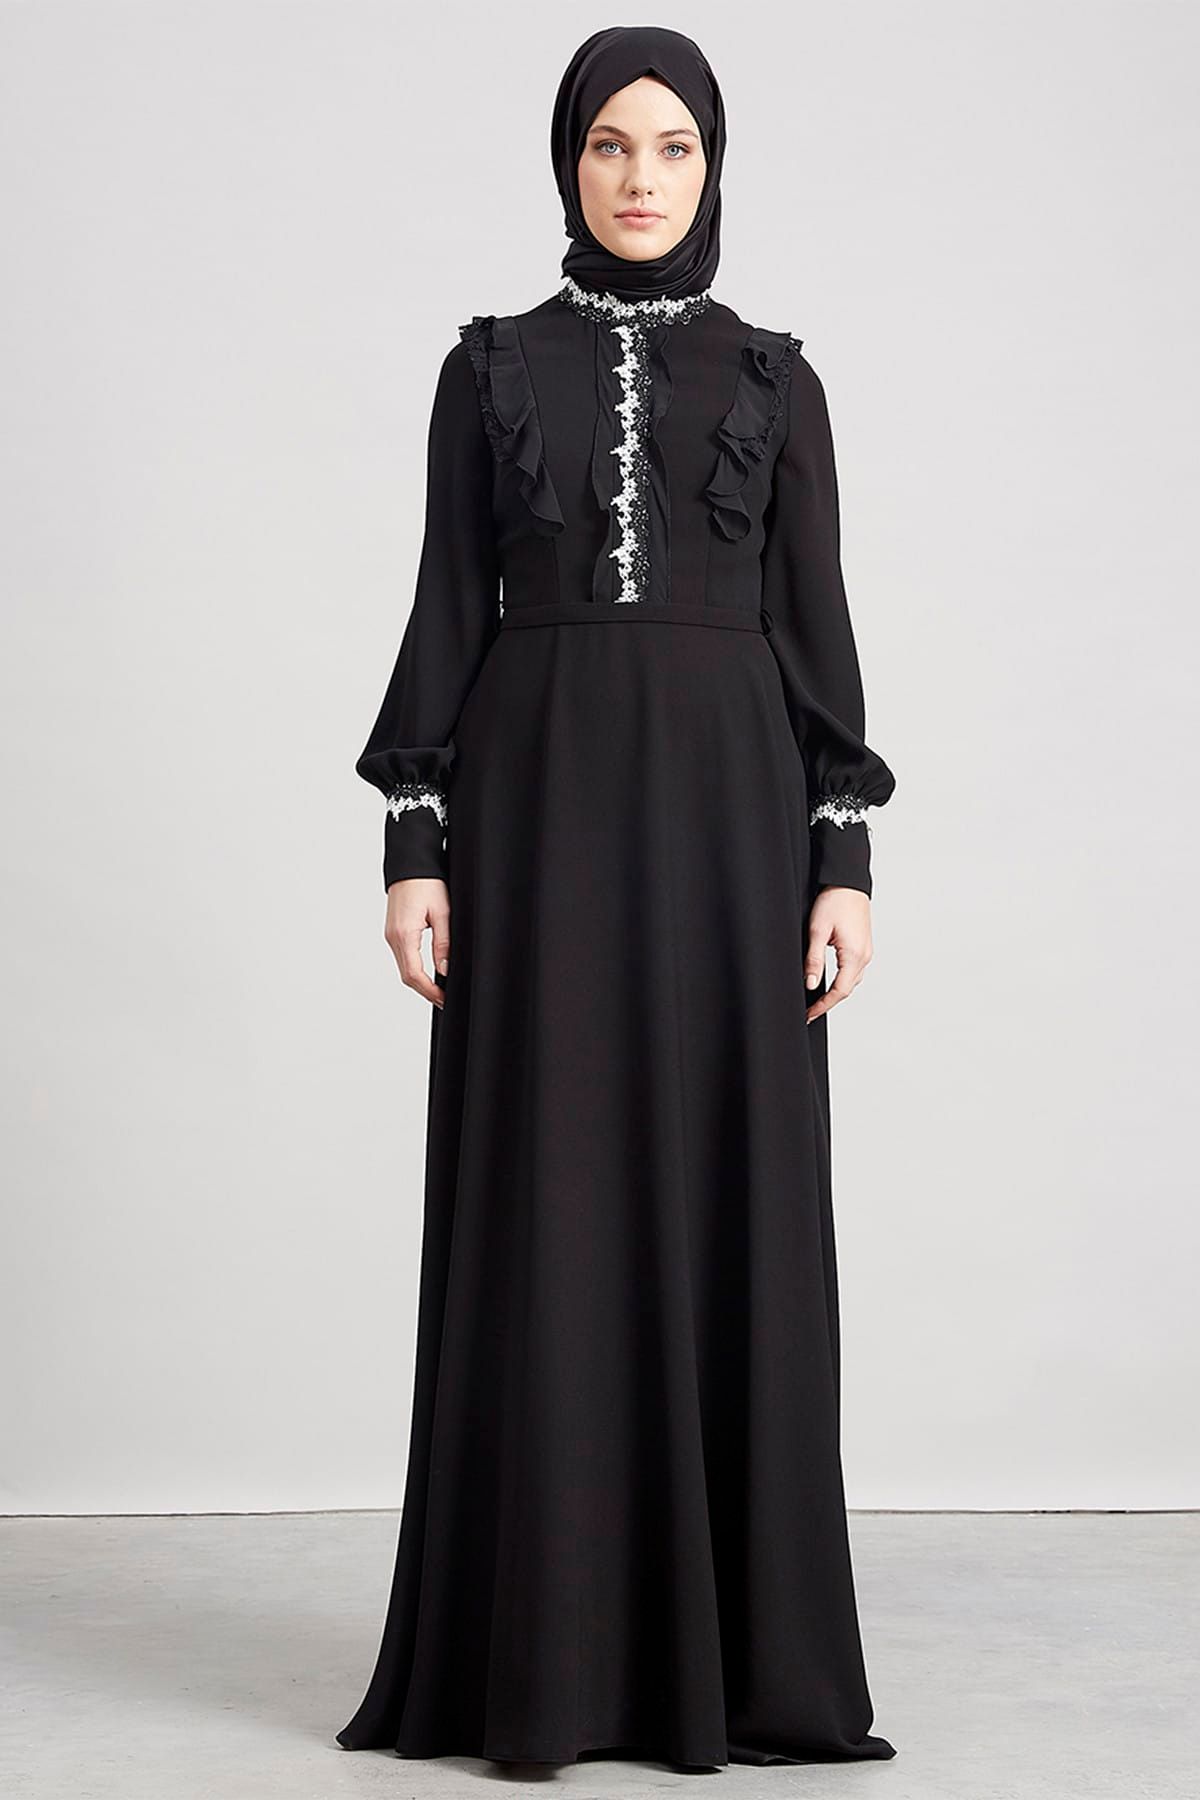 Kayra Kadın Güpür Detaylı Elbise Siyah KA-A7-23096-12